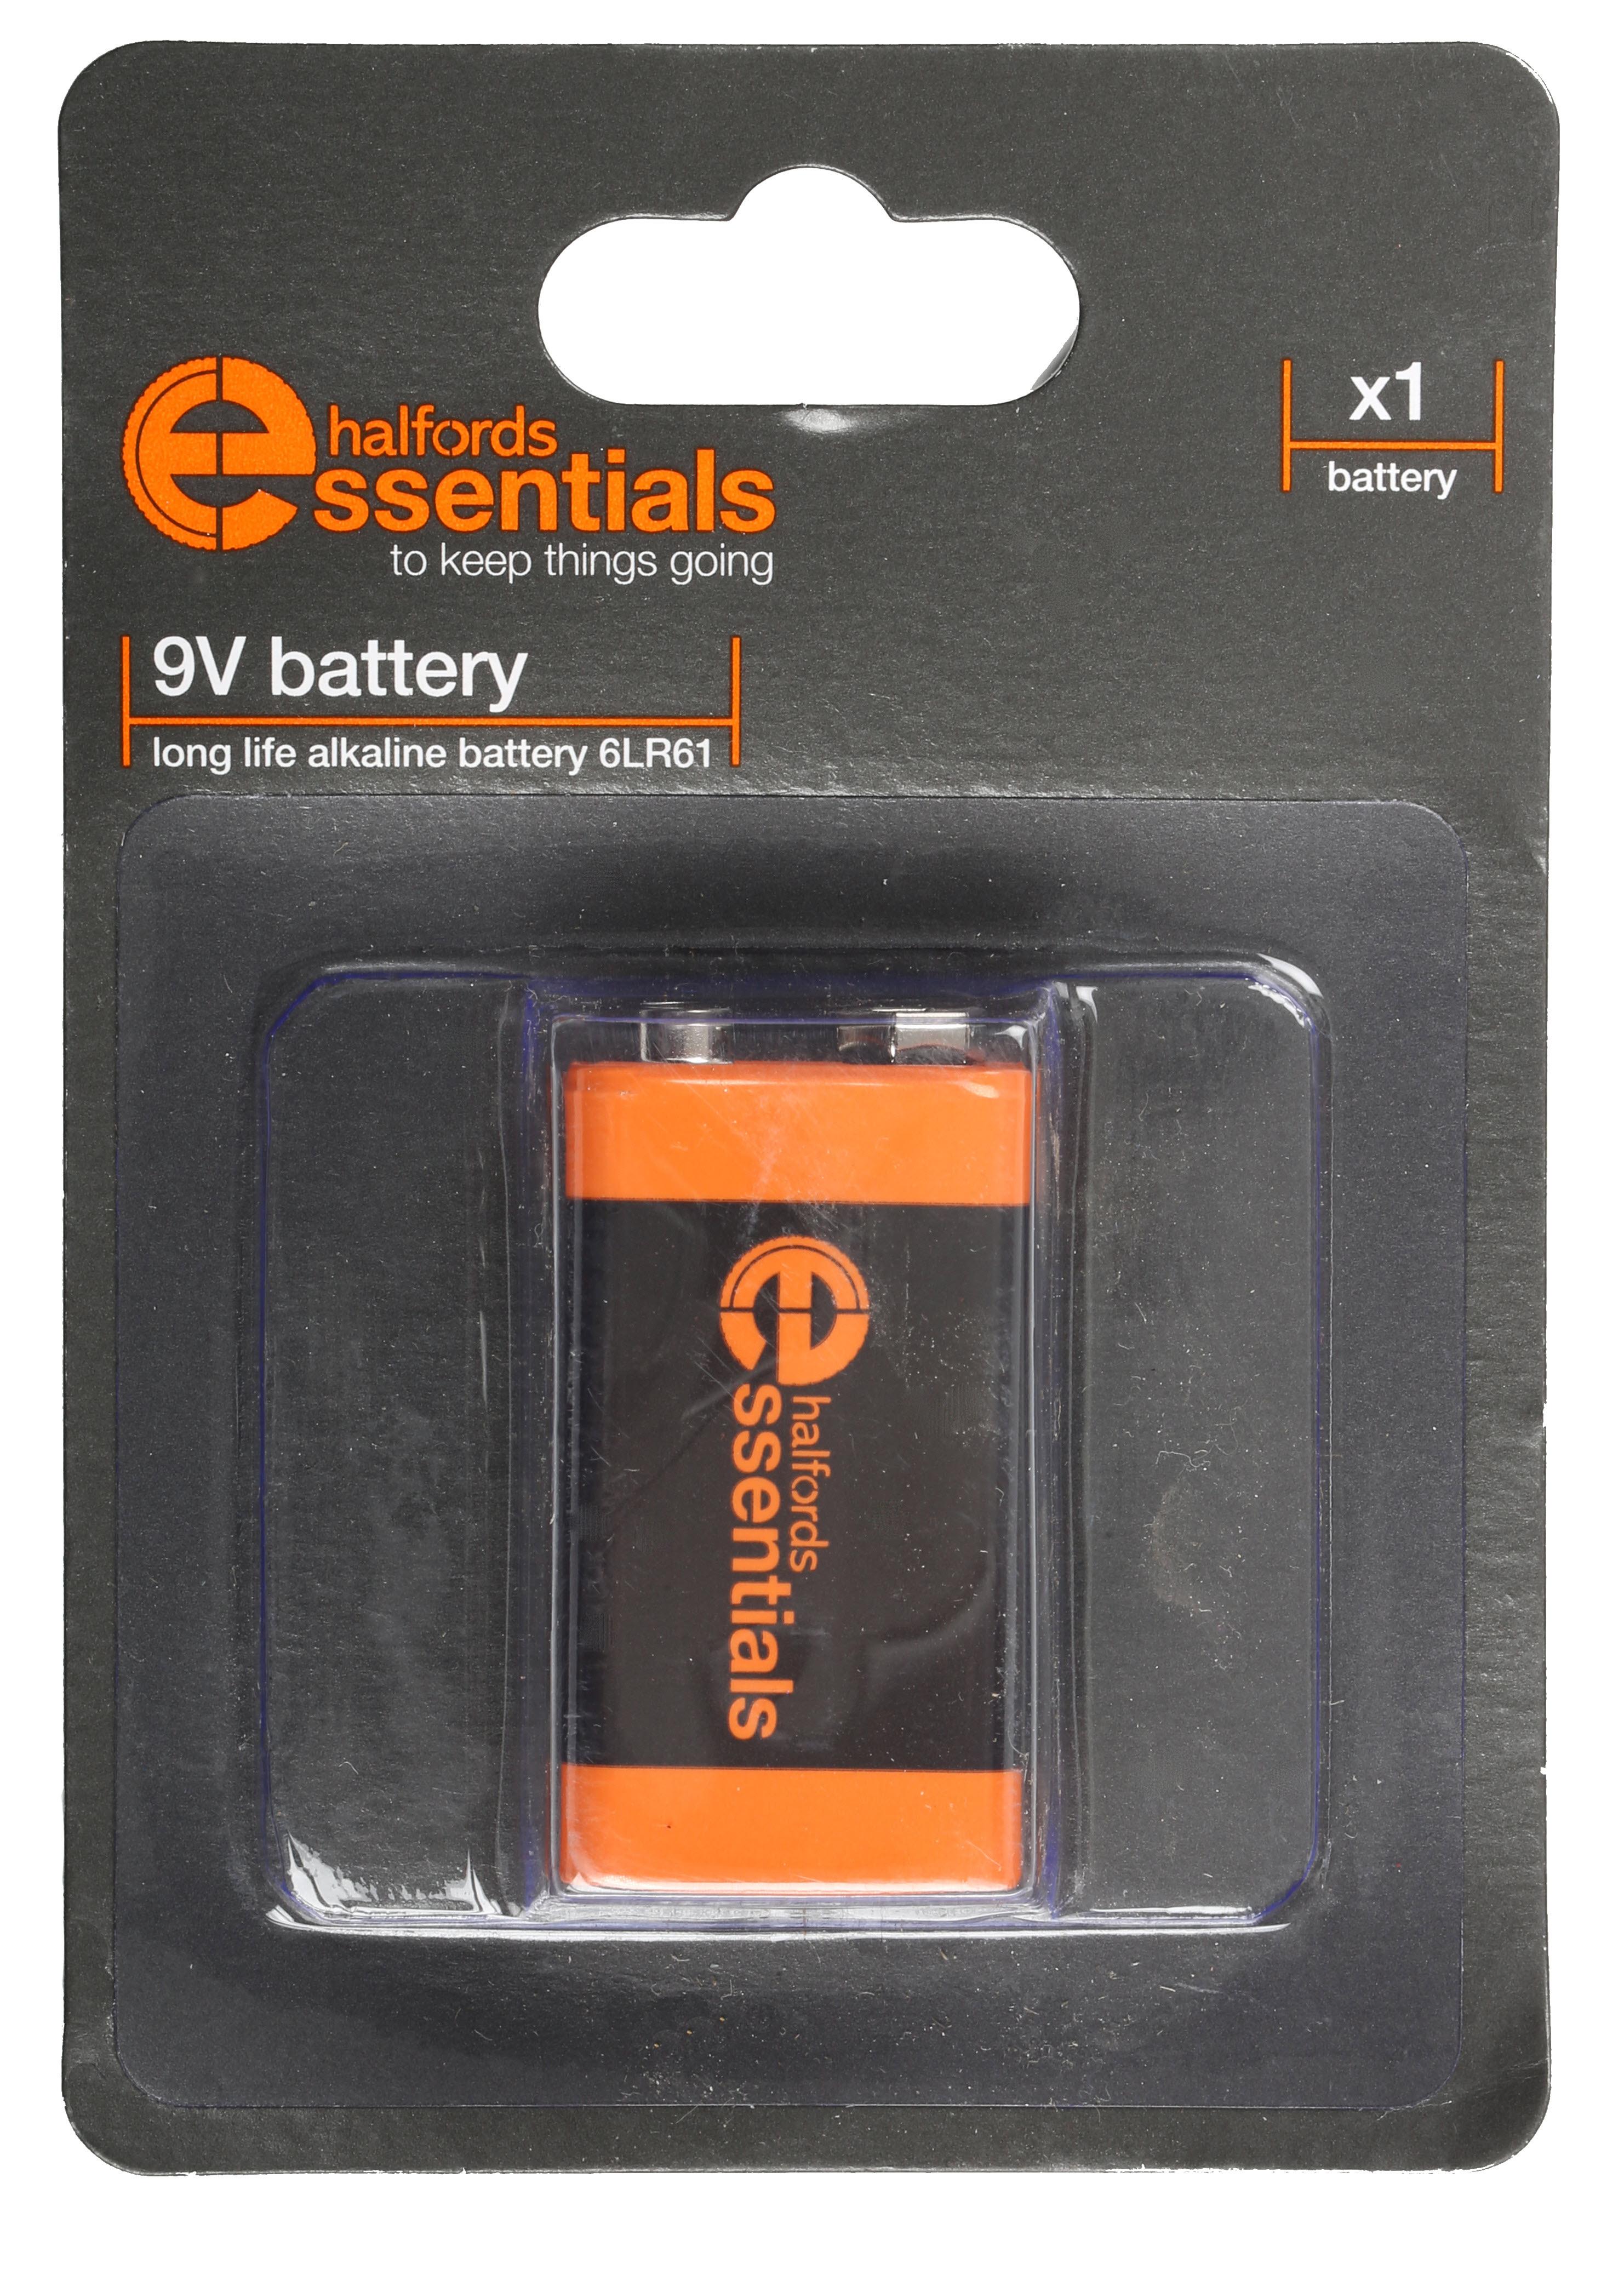 Halfords Essential Batteries 9V X1